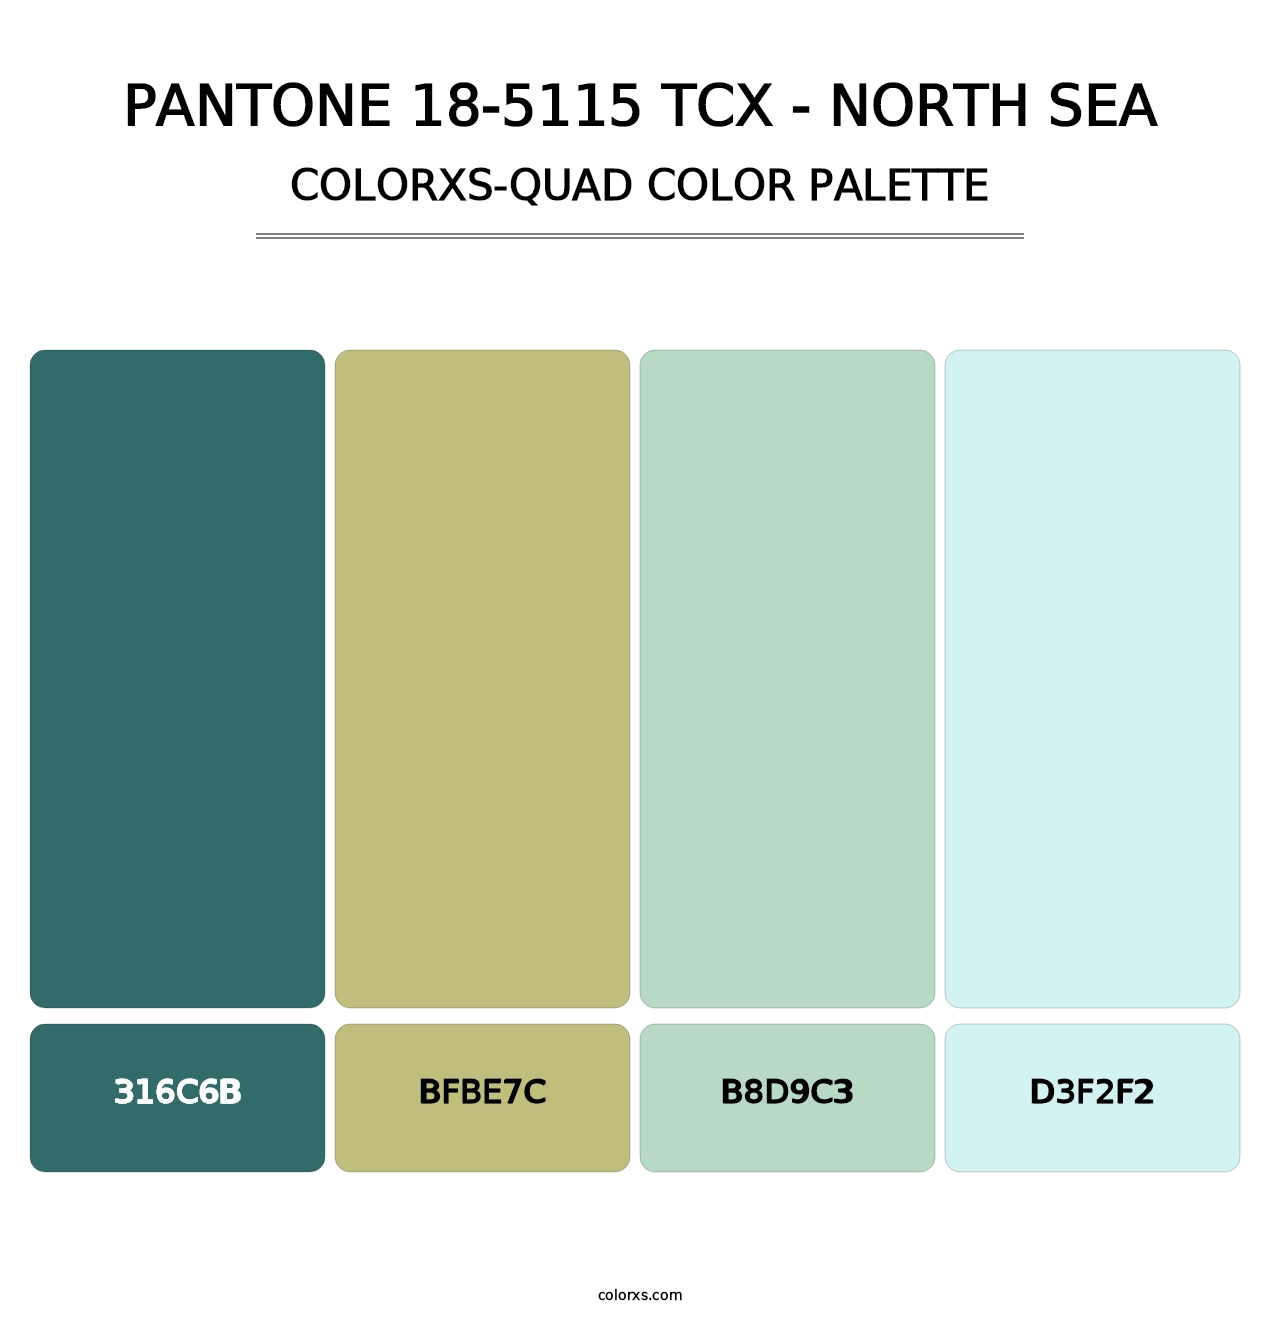 PANTONE 18-5115 TCX - North Sea - Colorxs Quad Palette